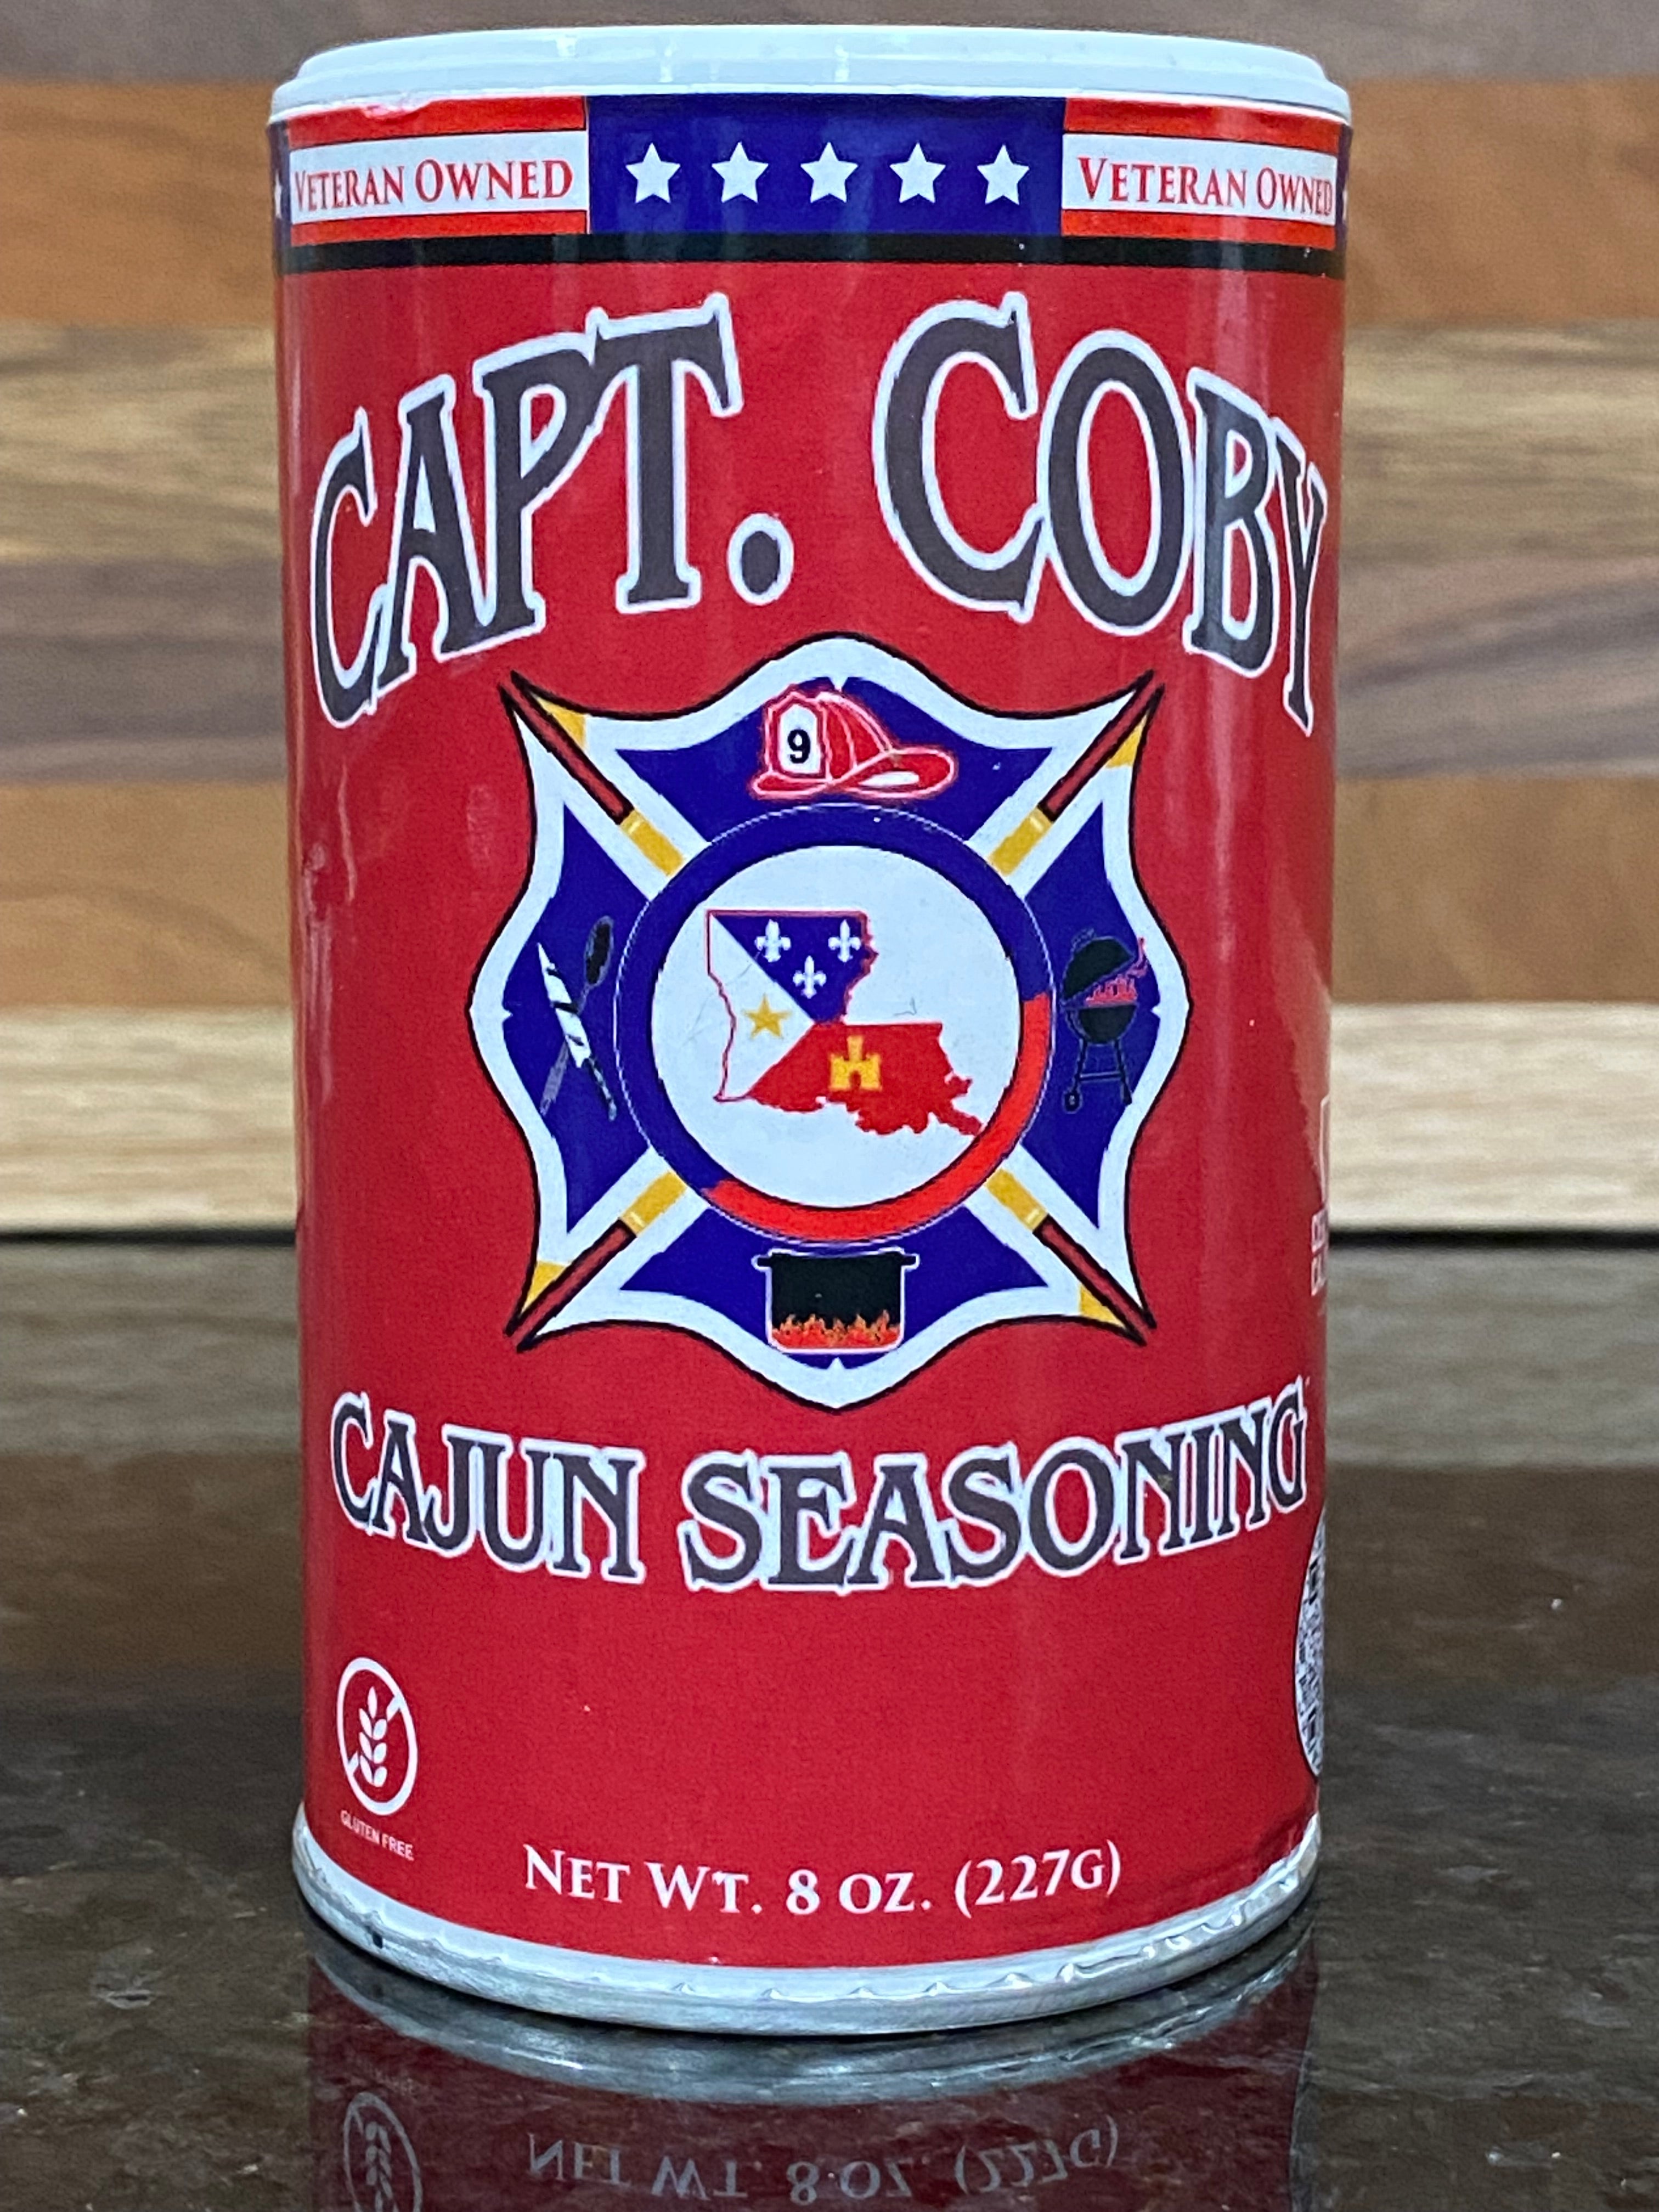 Capt. Coby's Cajun Seasoning